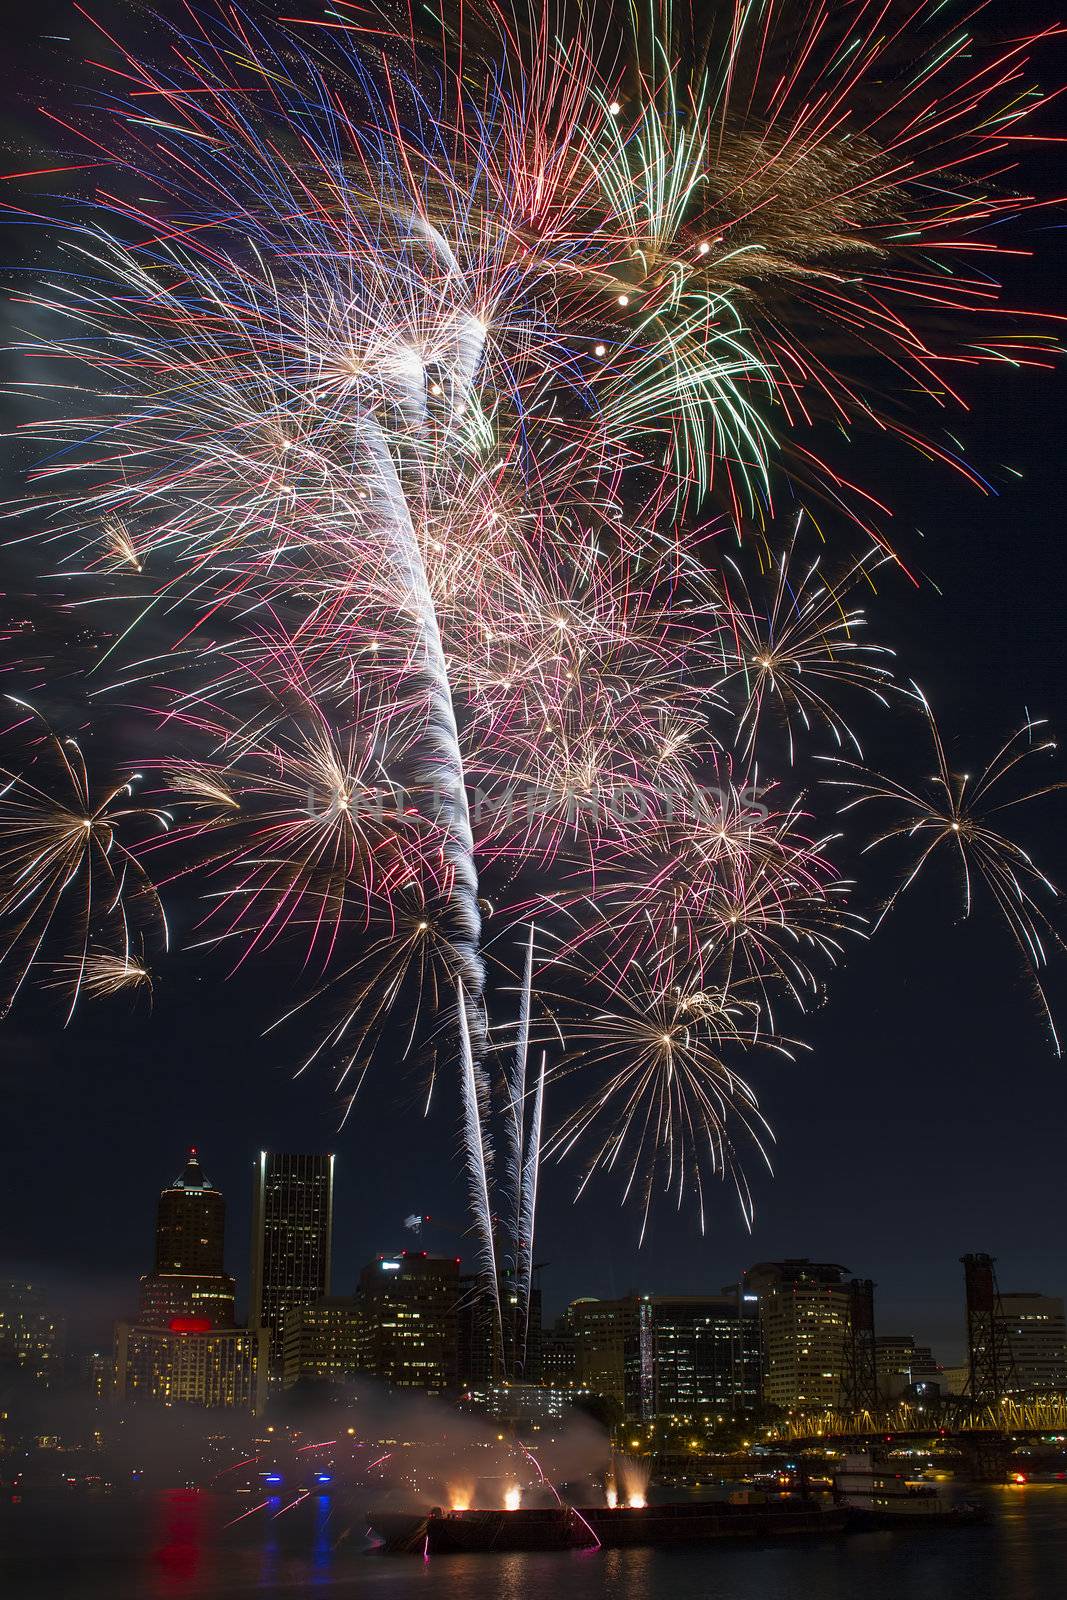 Multi-Color Fireworks Display Over Portland Oregon Skyline by jpldesigns